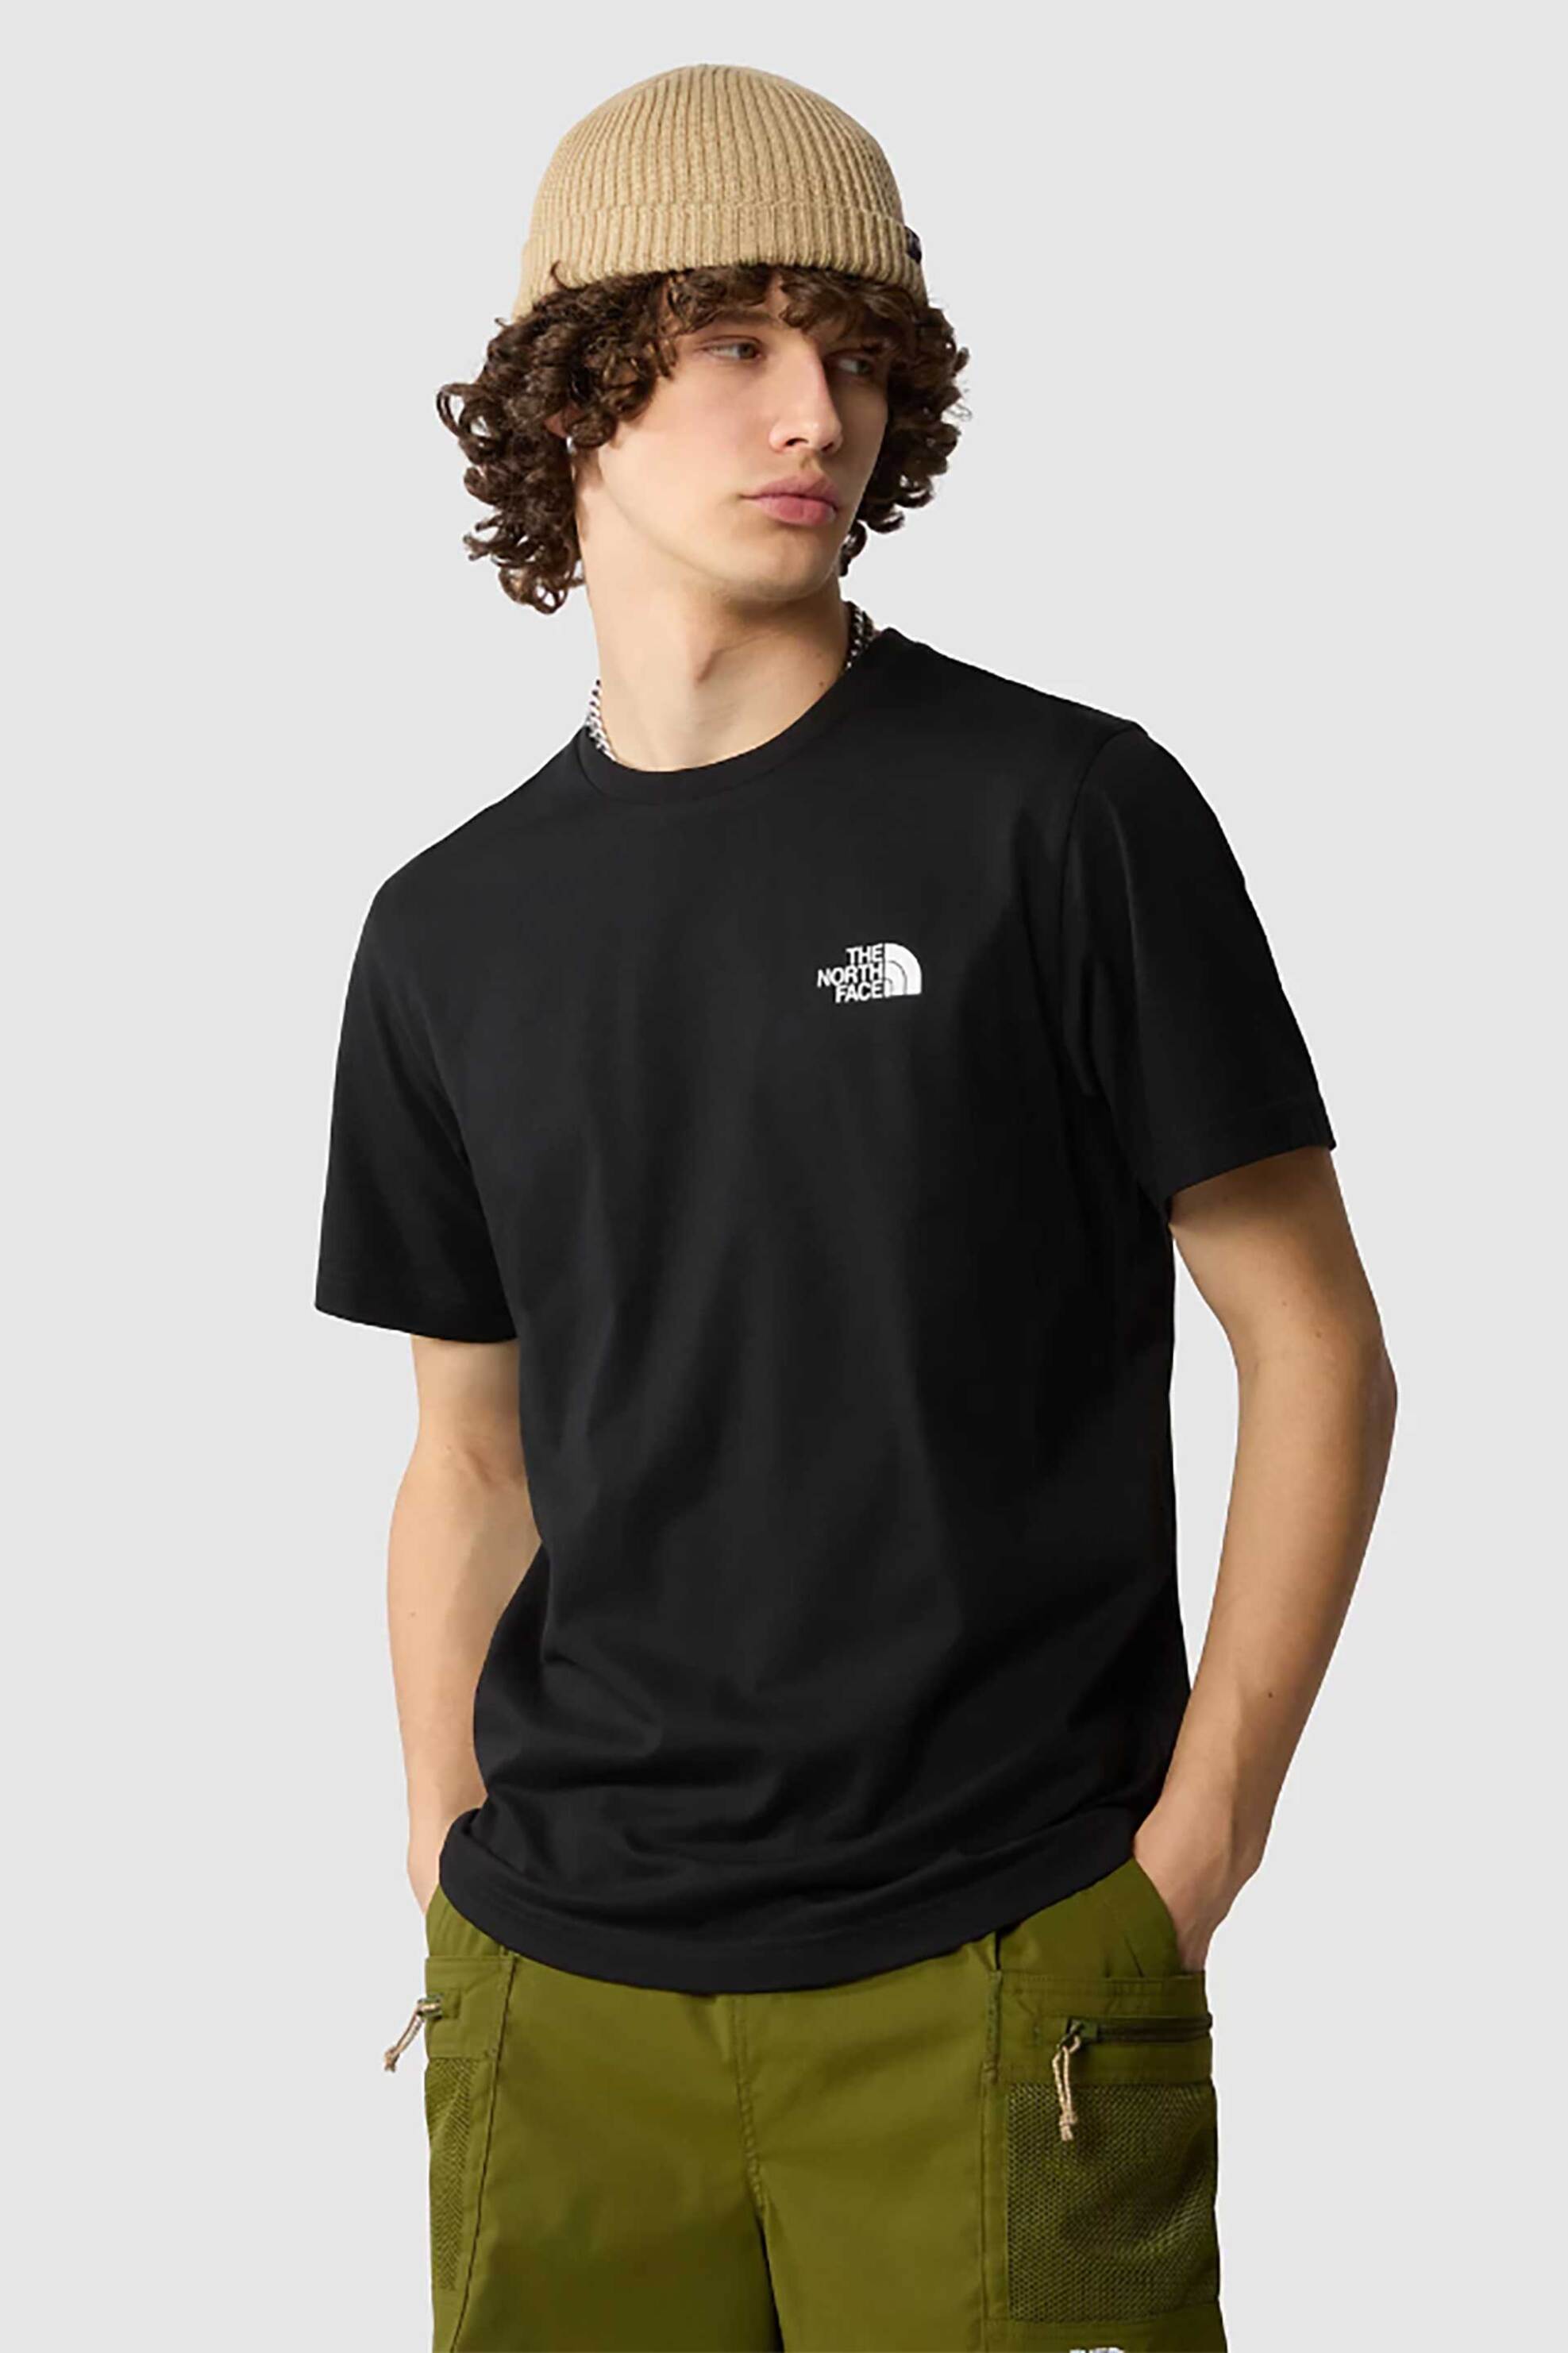 Ανδρική Μόδα > Ανδρικά Ρούχα > Ανδρικές Μπλούζες > Ανδρικά T-Shirts The North Face ανδρικό T-shirt μονόχρωμο με logo prints και logo loop label "Simple Dome" - NF0A87NGJK31 Μαύρο